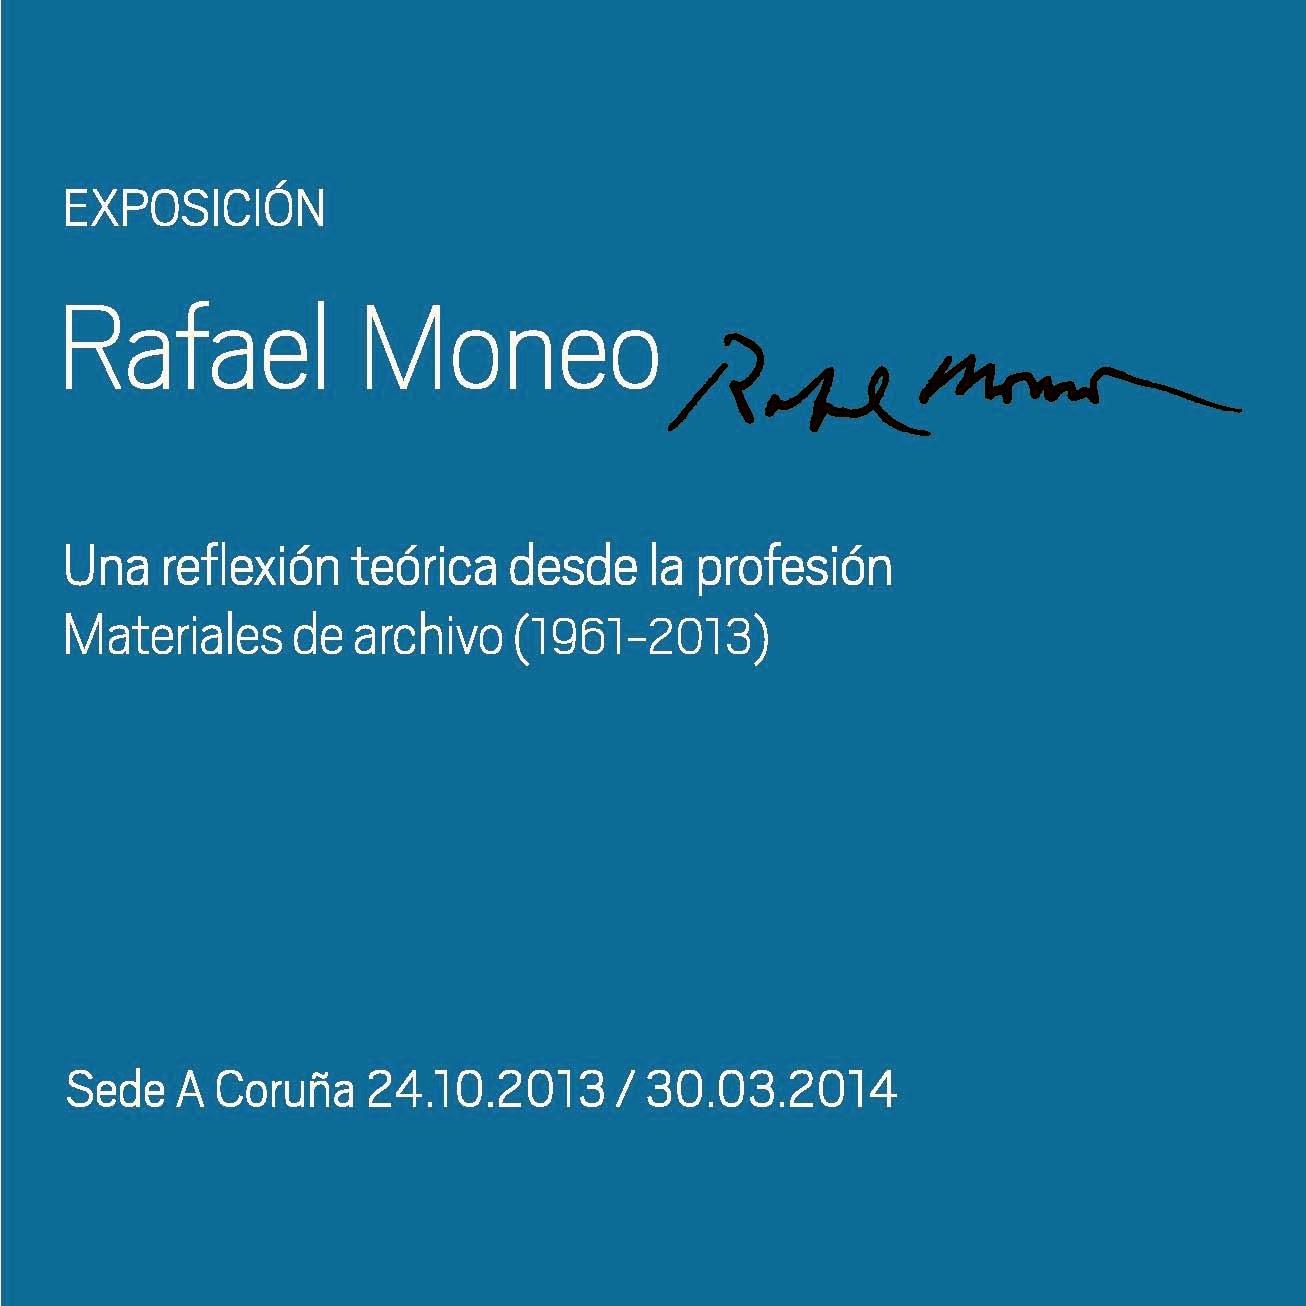 Exposición Rafael Moneo - Fundación Barrié, A Coruña